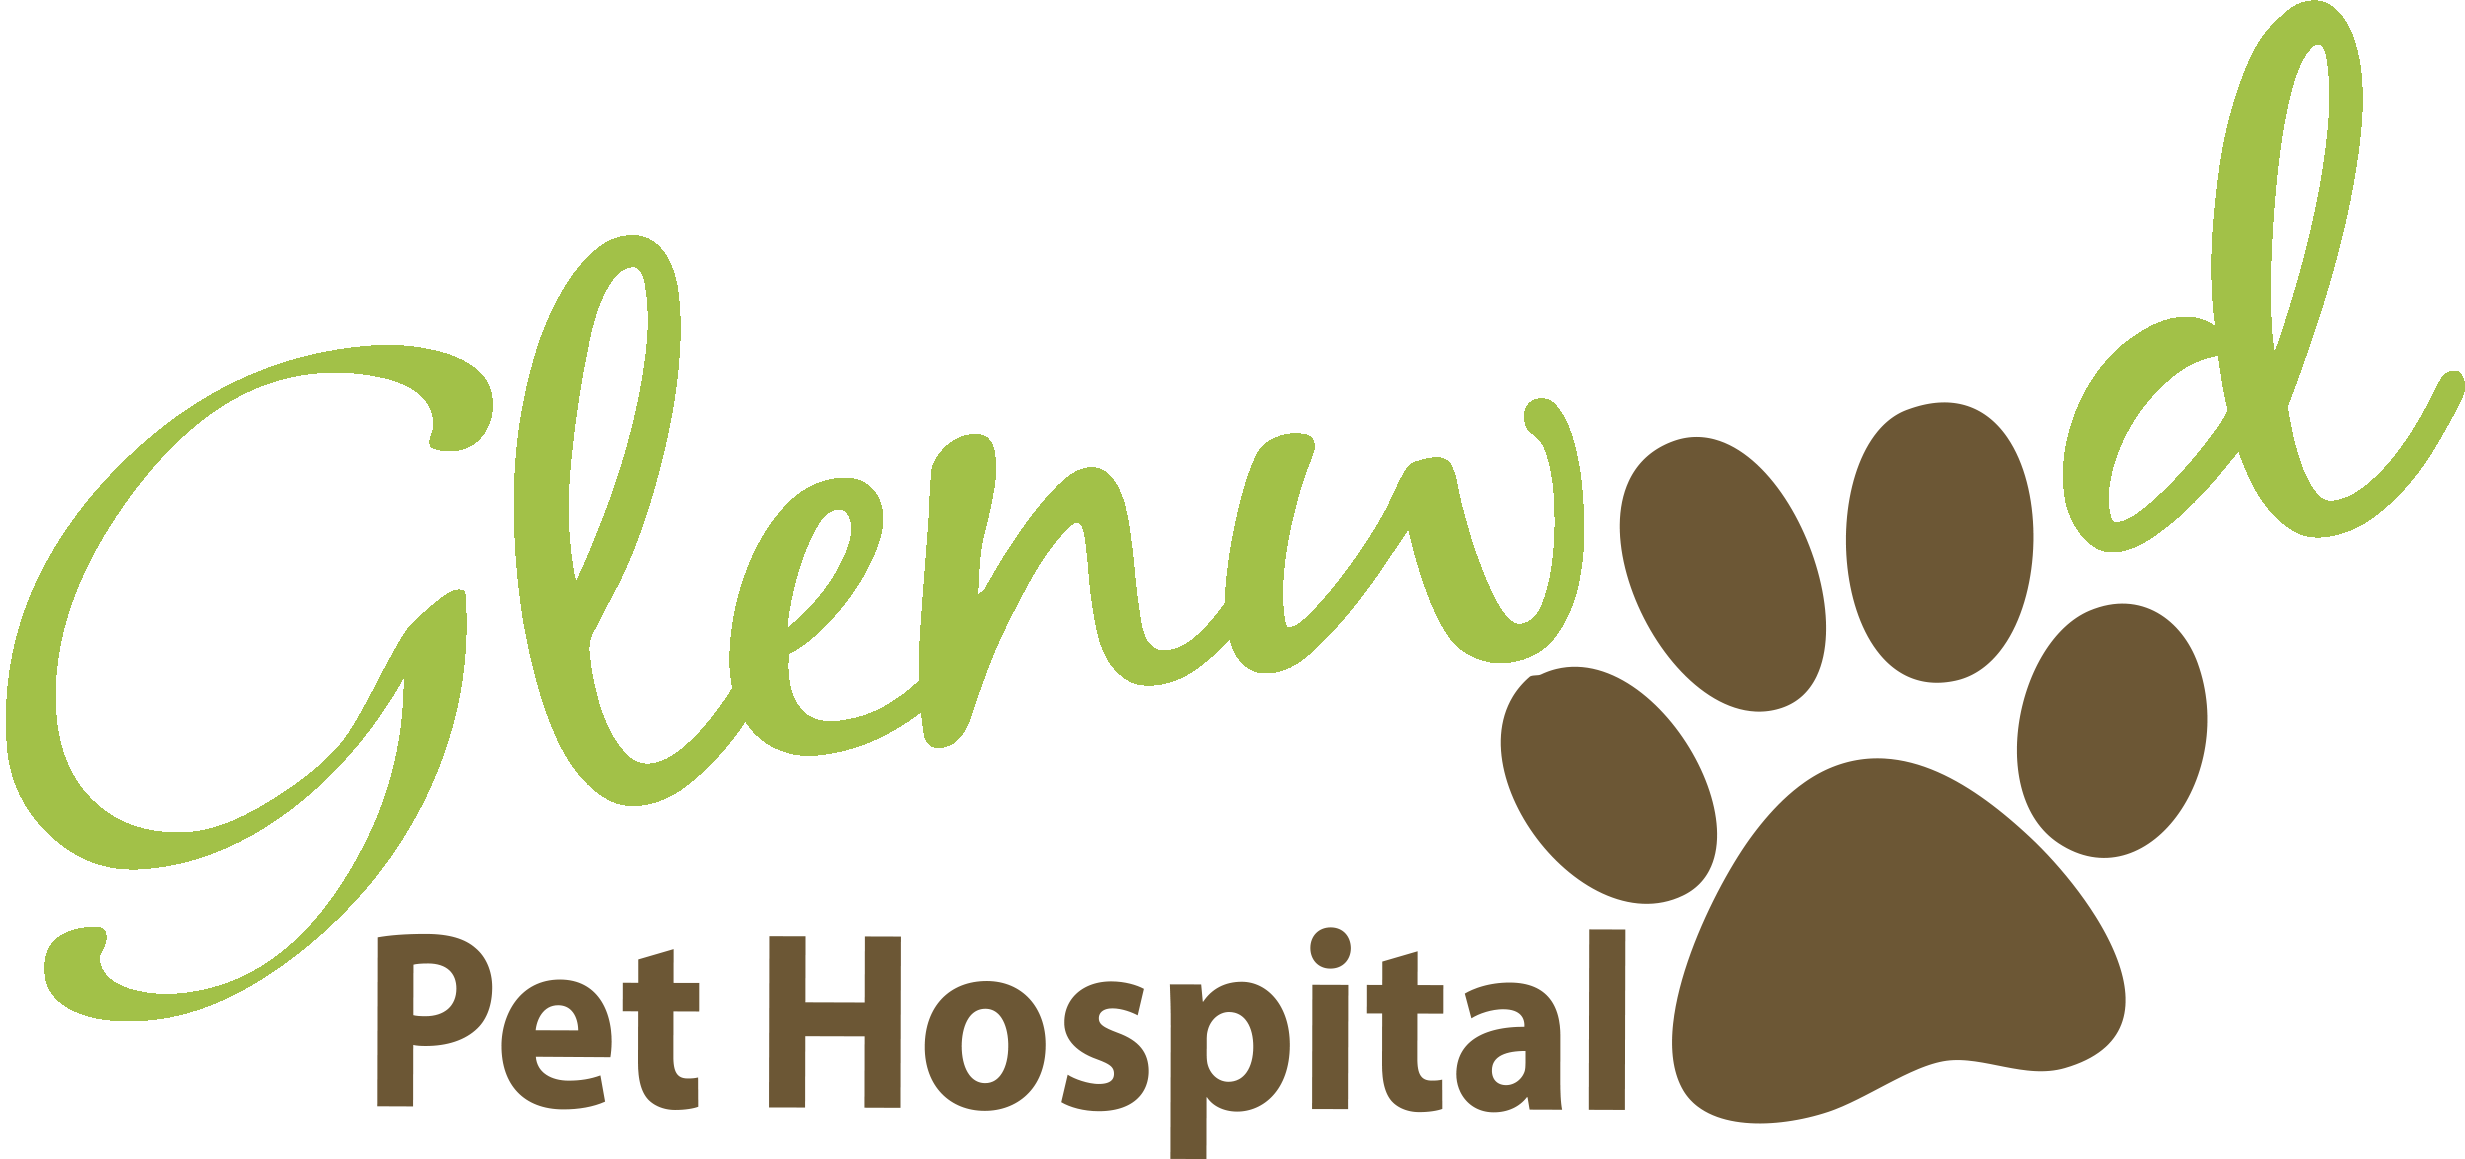 Glenwood Pet Hospital Logo